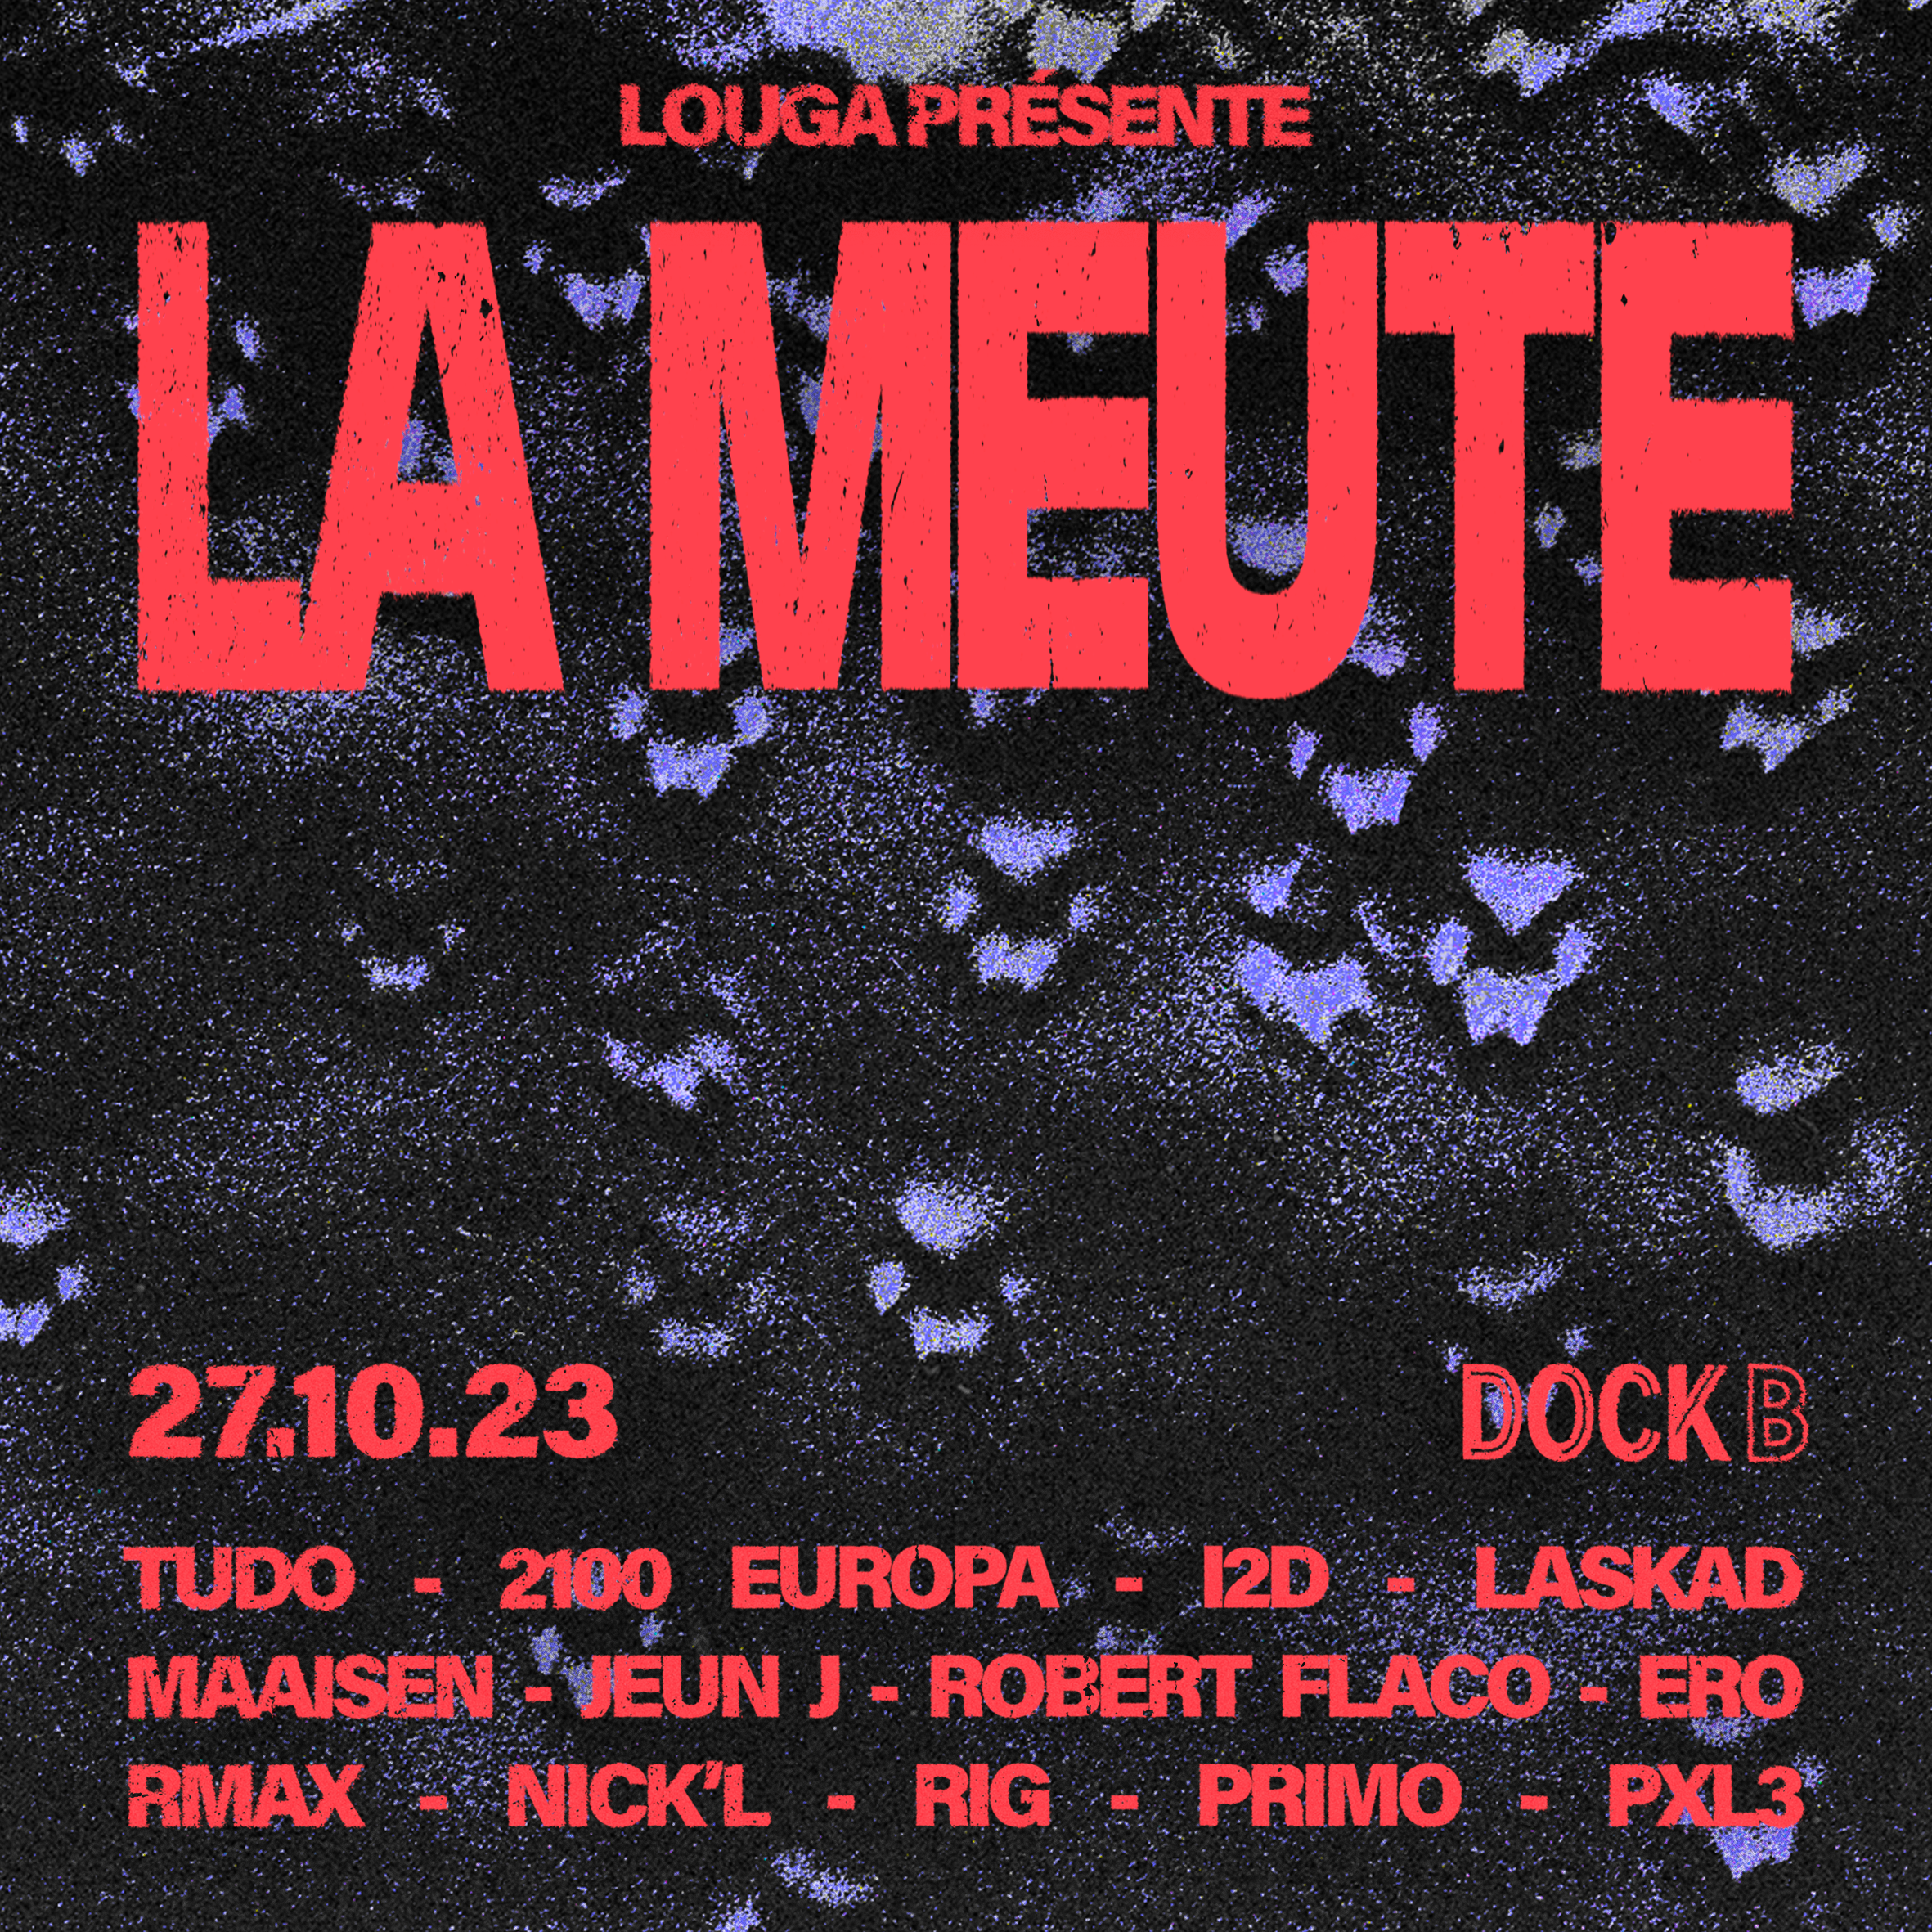 Festival “La Meute” – expositions, projections, et release party Louga & Friends